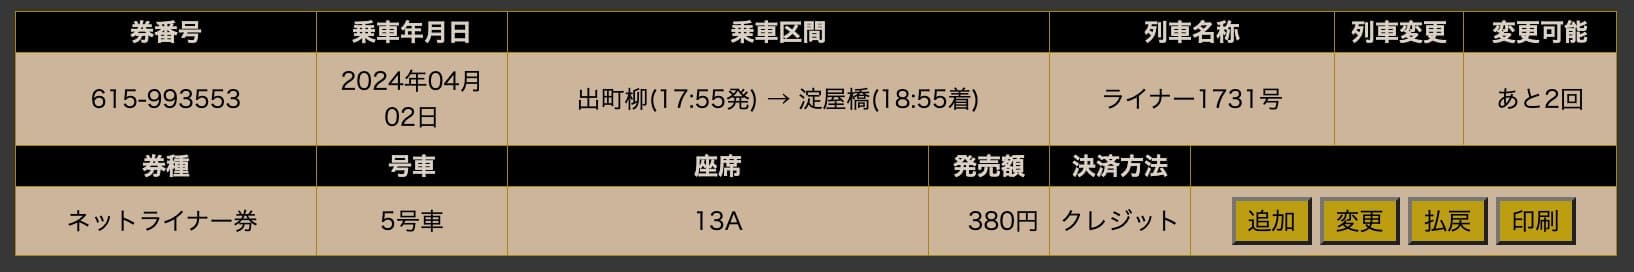 京阪電車ライナーの予約変更